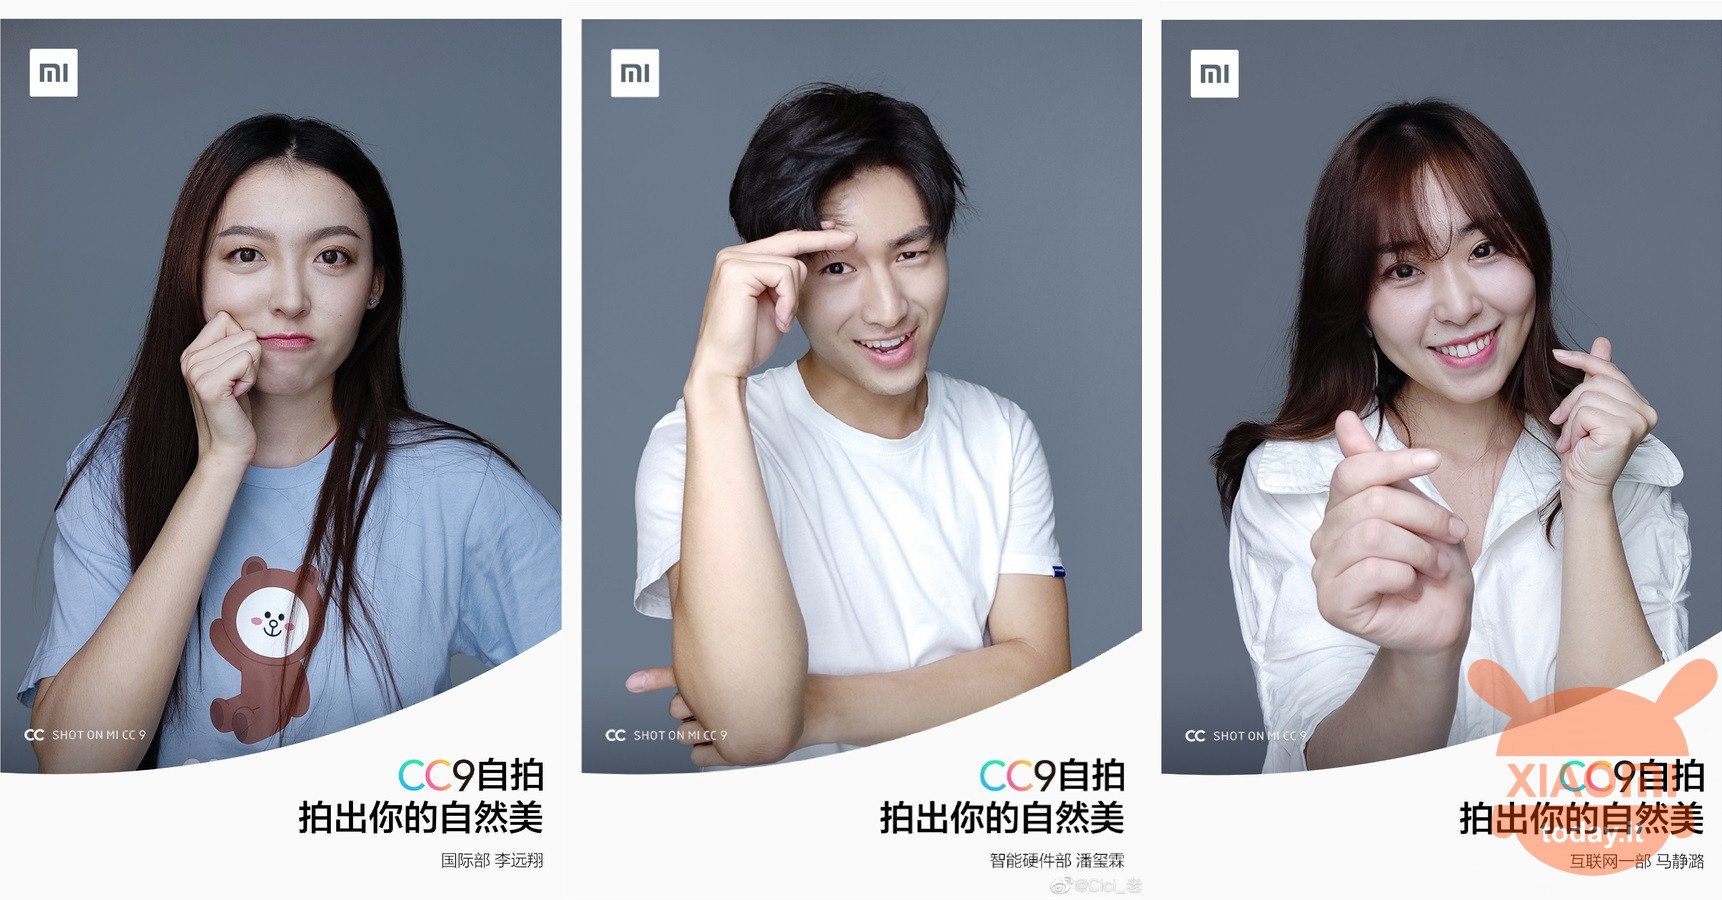 l'empleat més guapo de Xiaomi